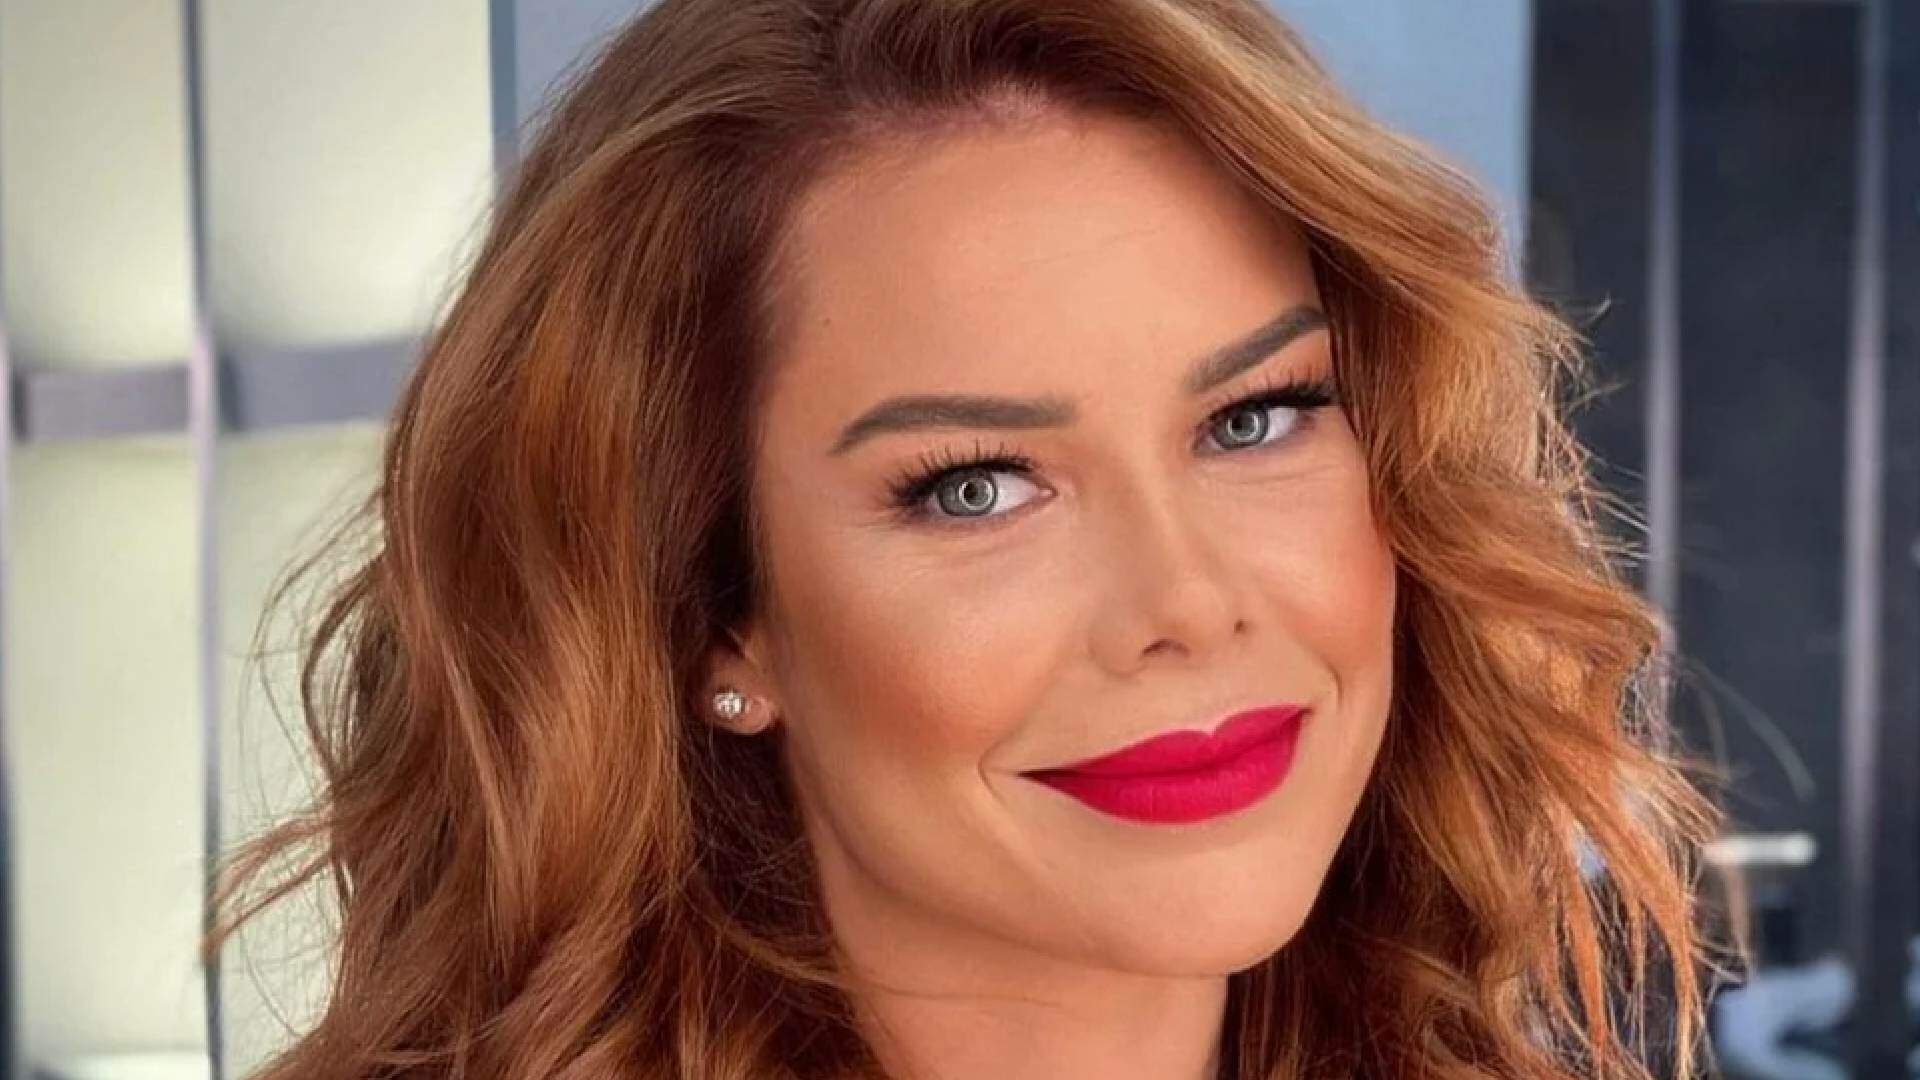 Fernanda Souza assume novo relacionamento com mulher: “AMOR É AMOR” - Metropolitana FM